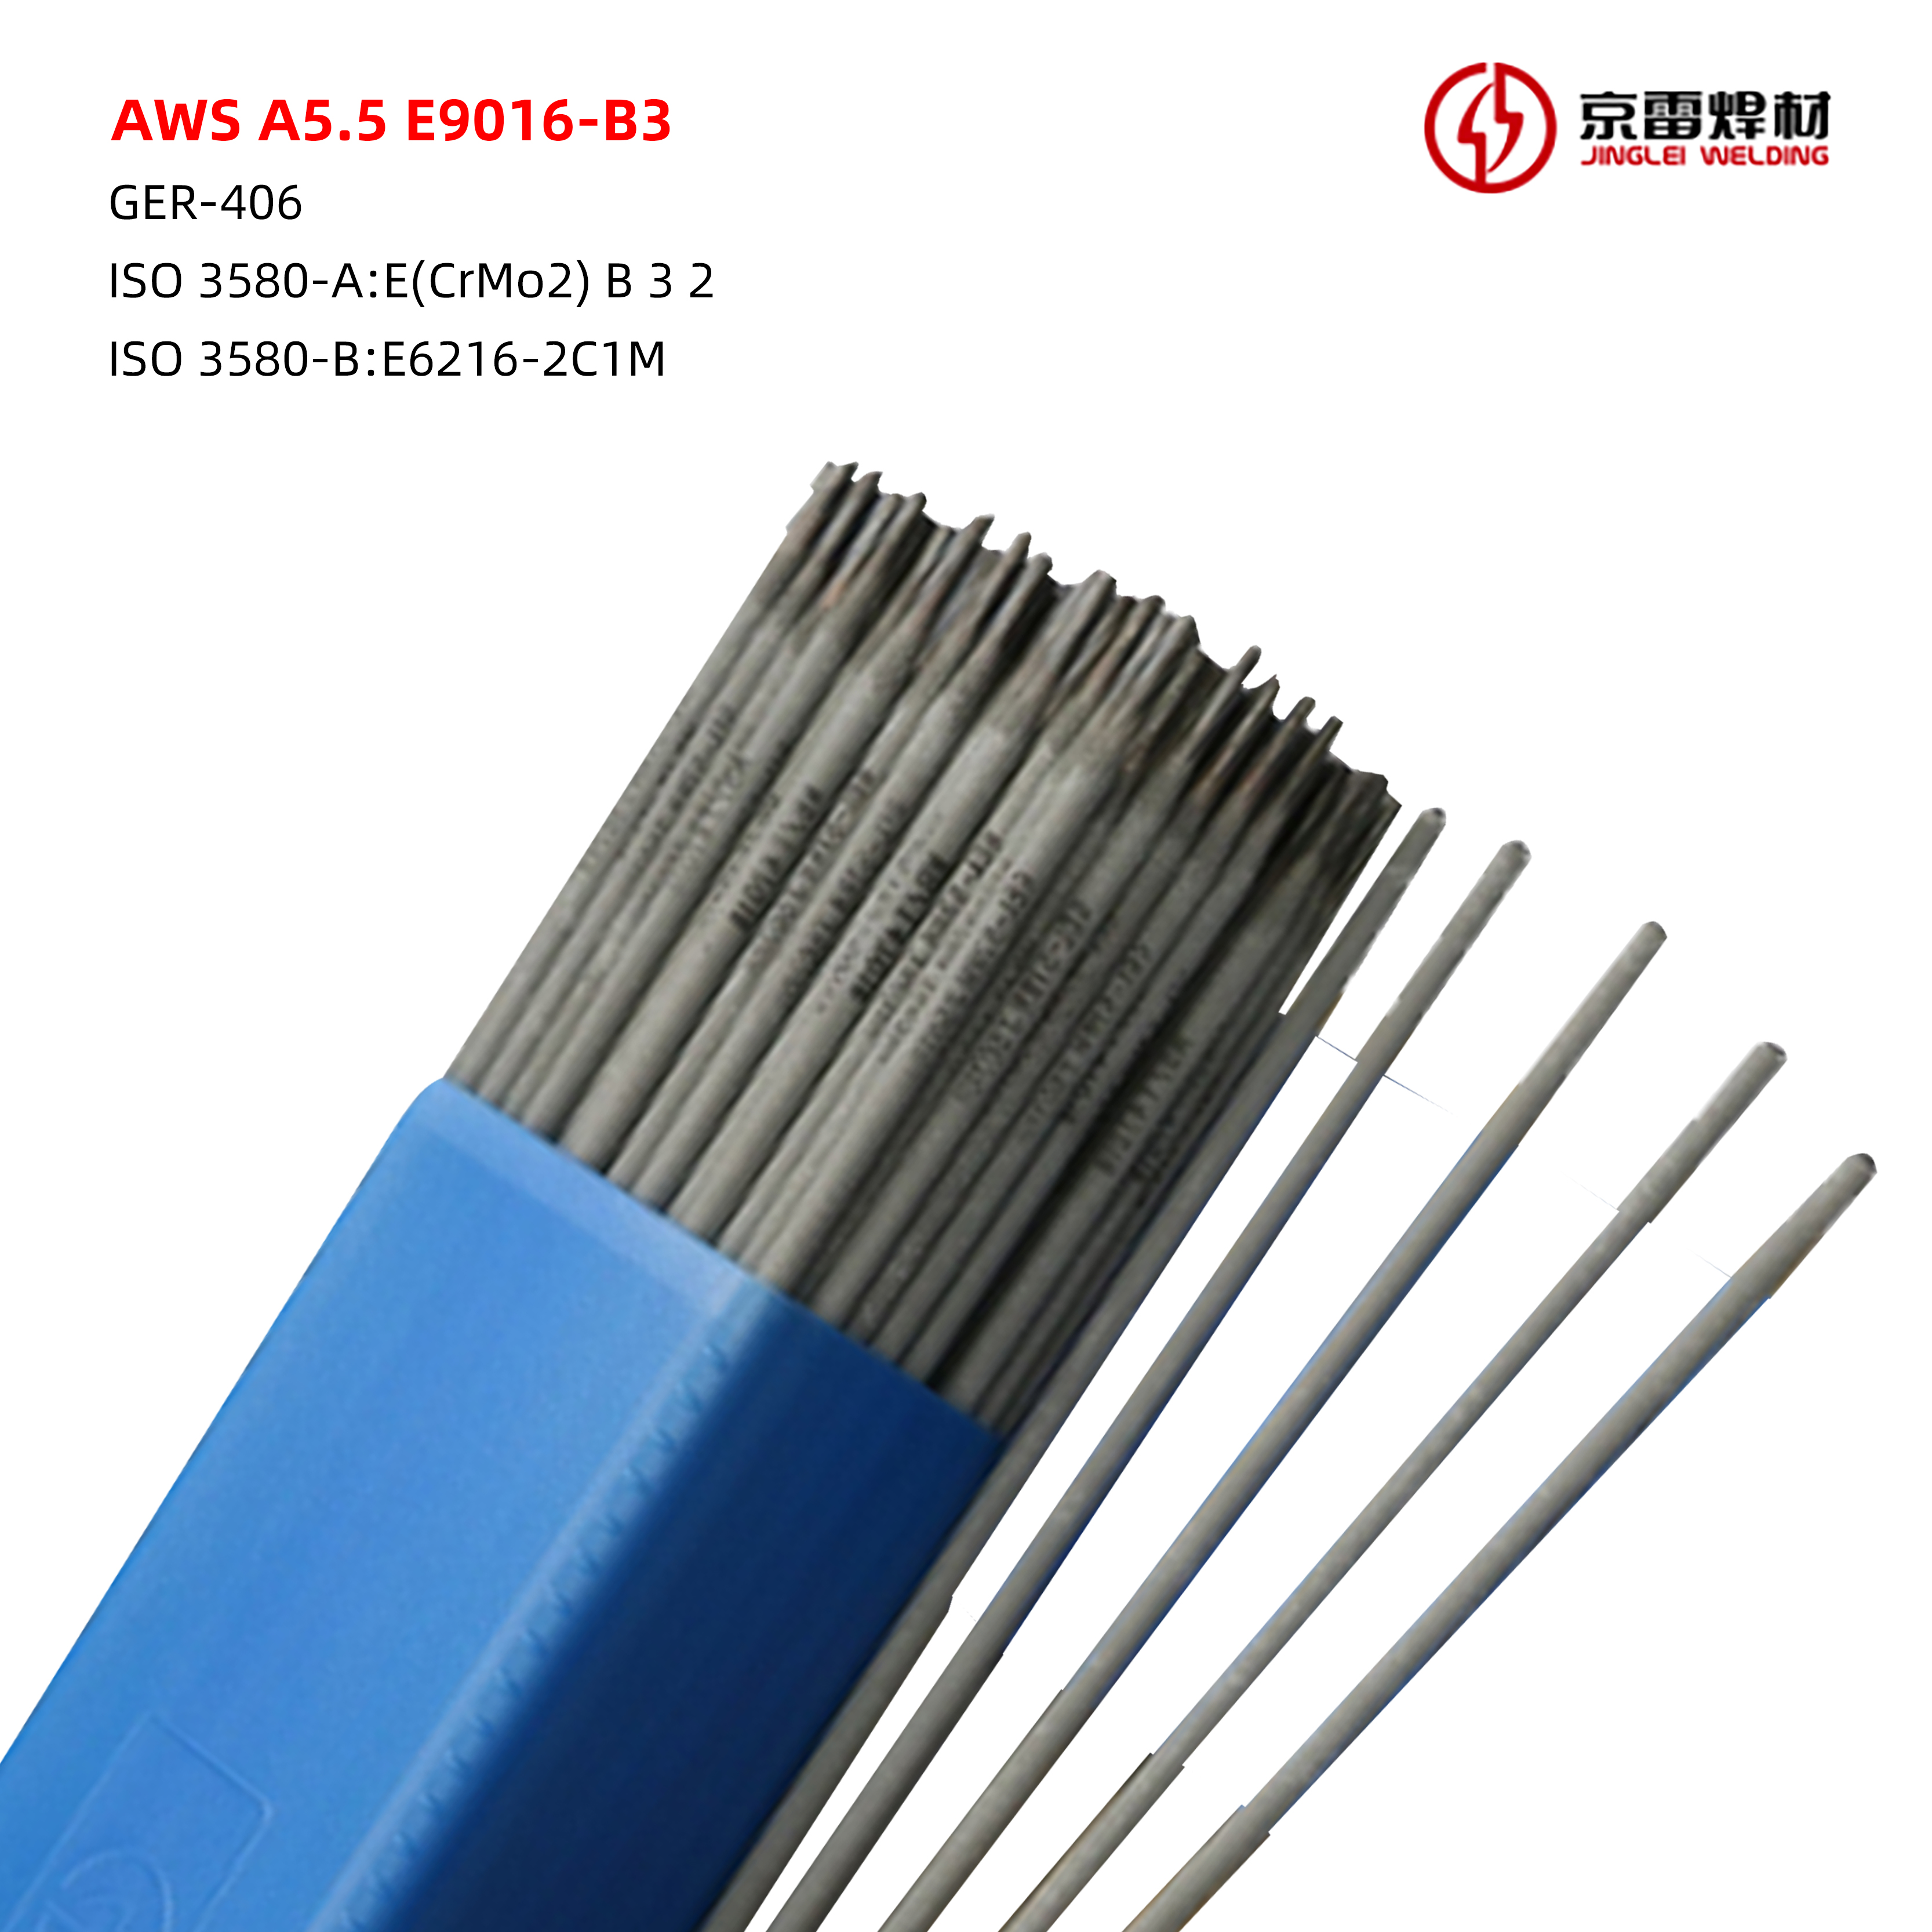 AWS A5.5 E9016-B3 01